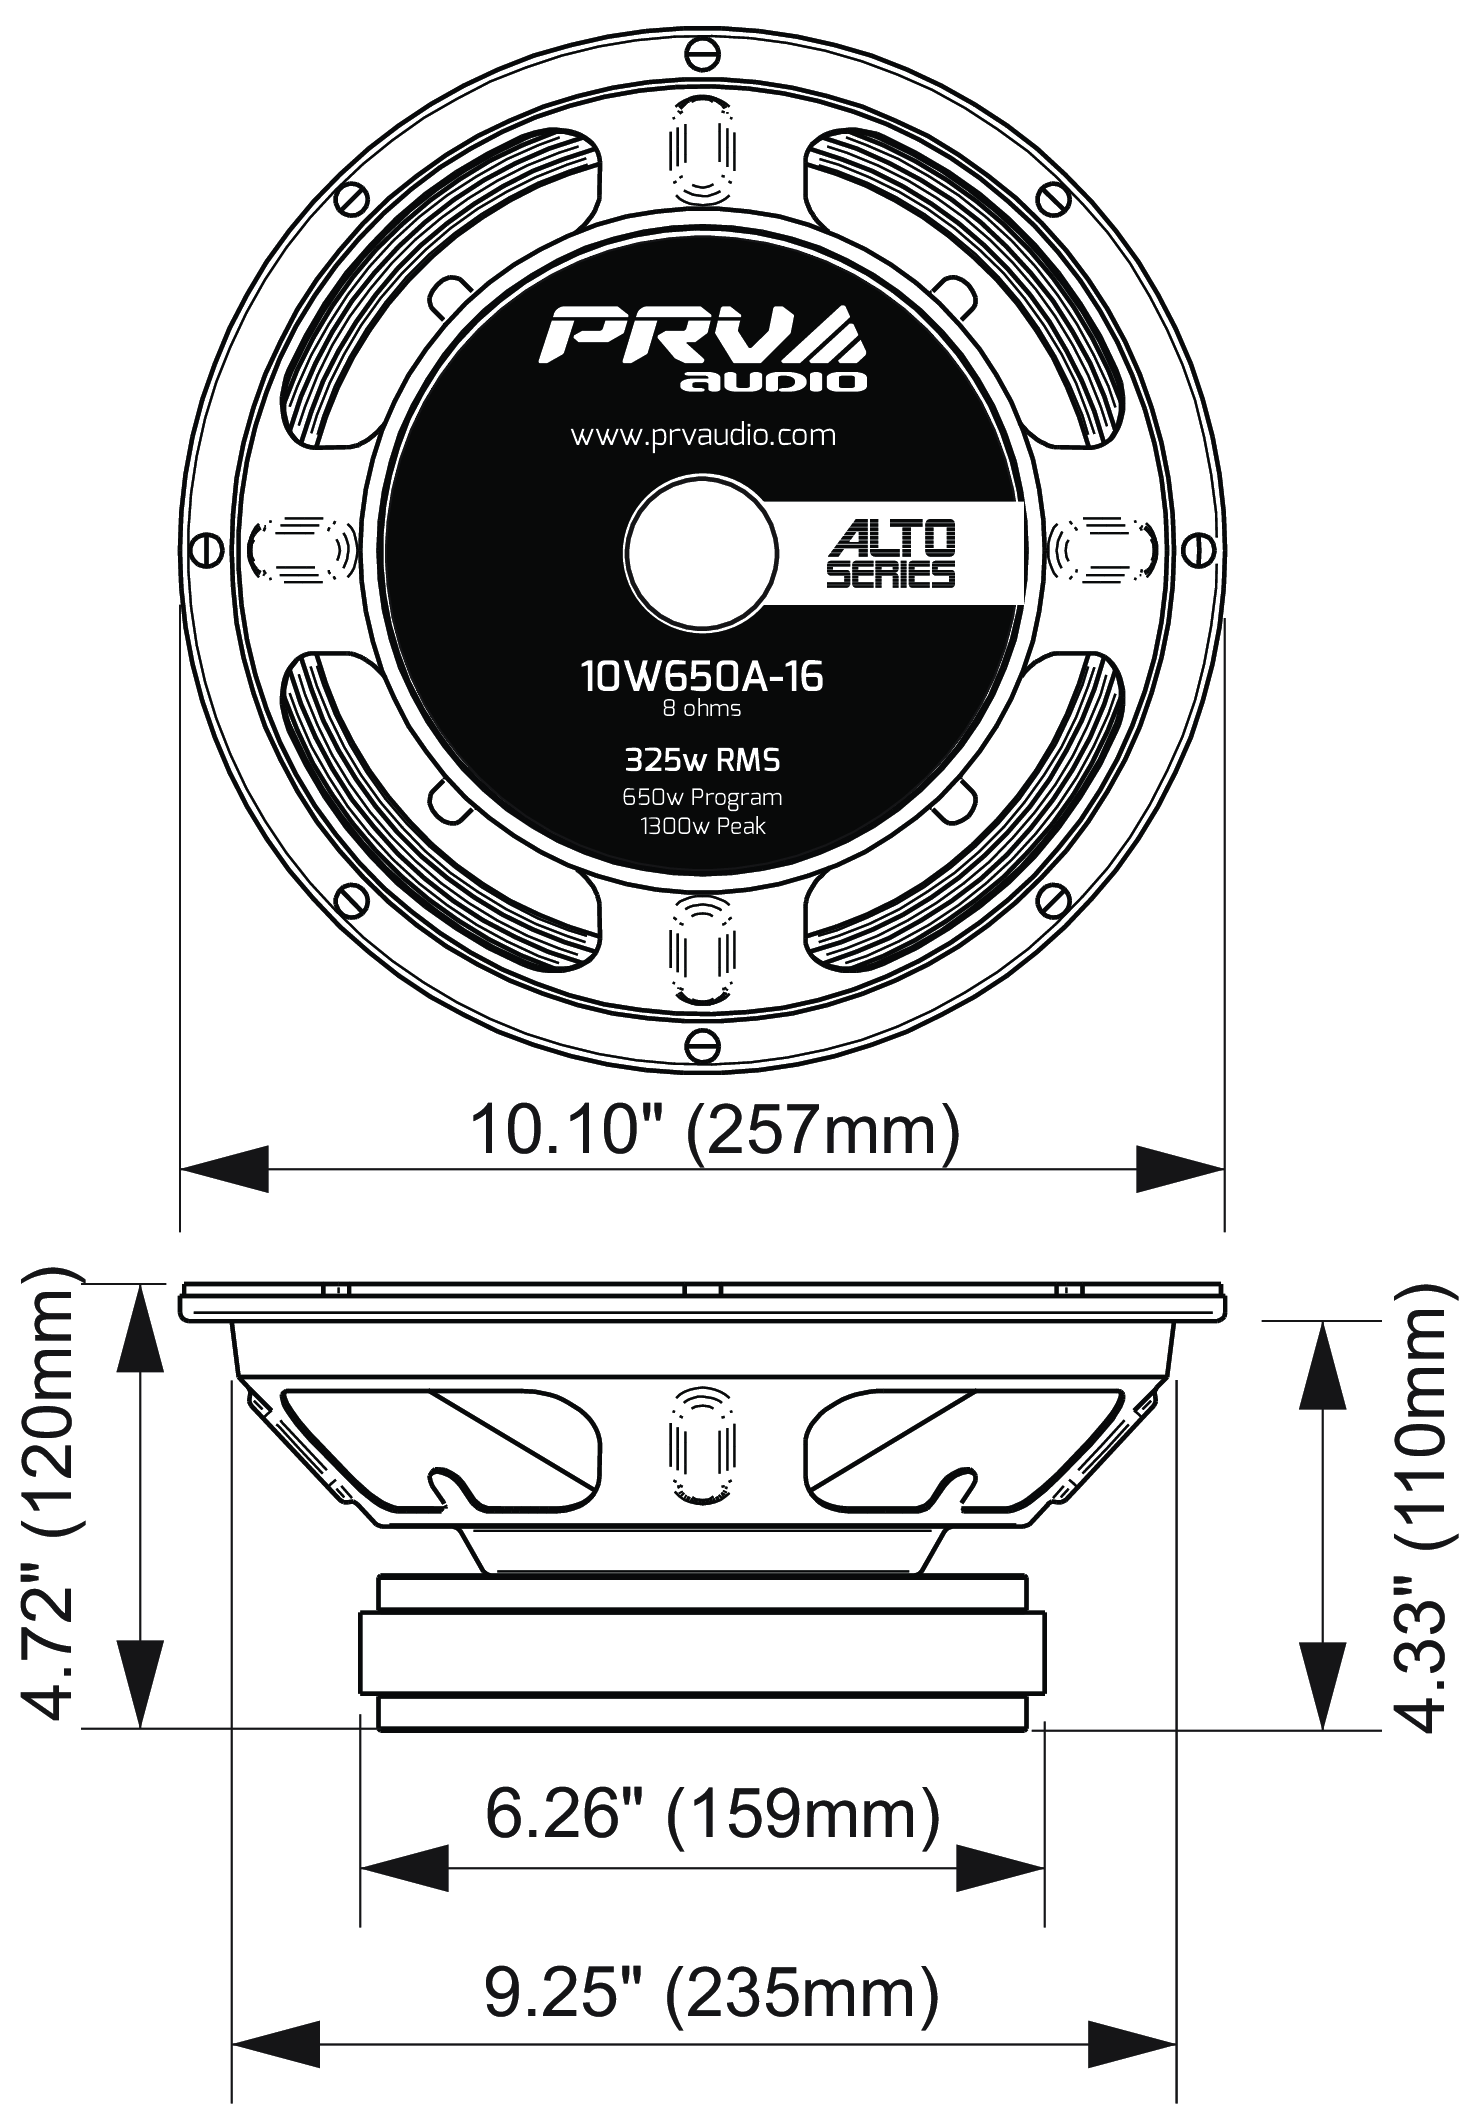 PRV Audio 10W650A-16 Dimensions